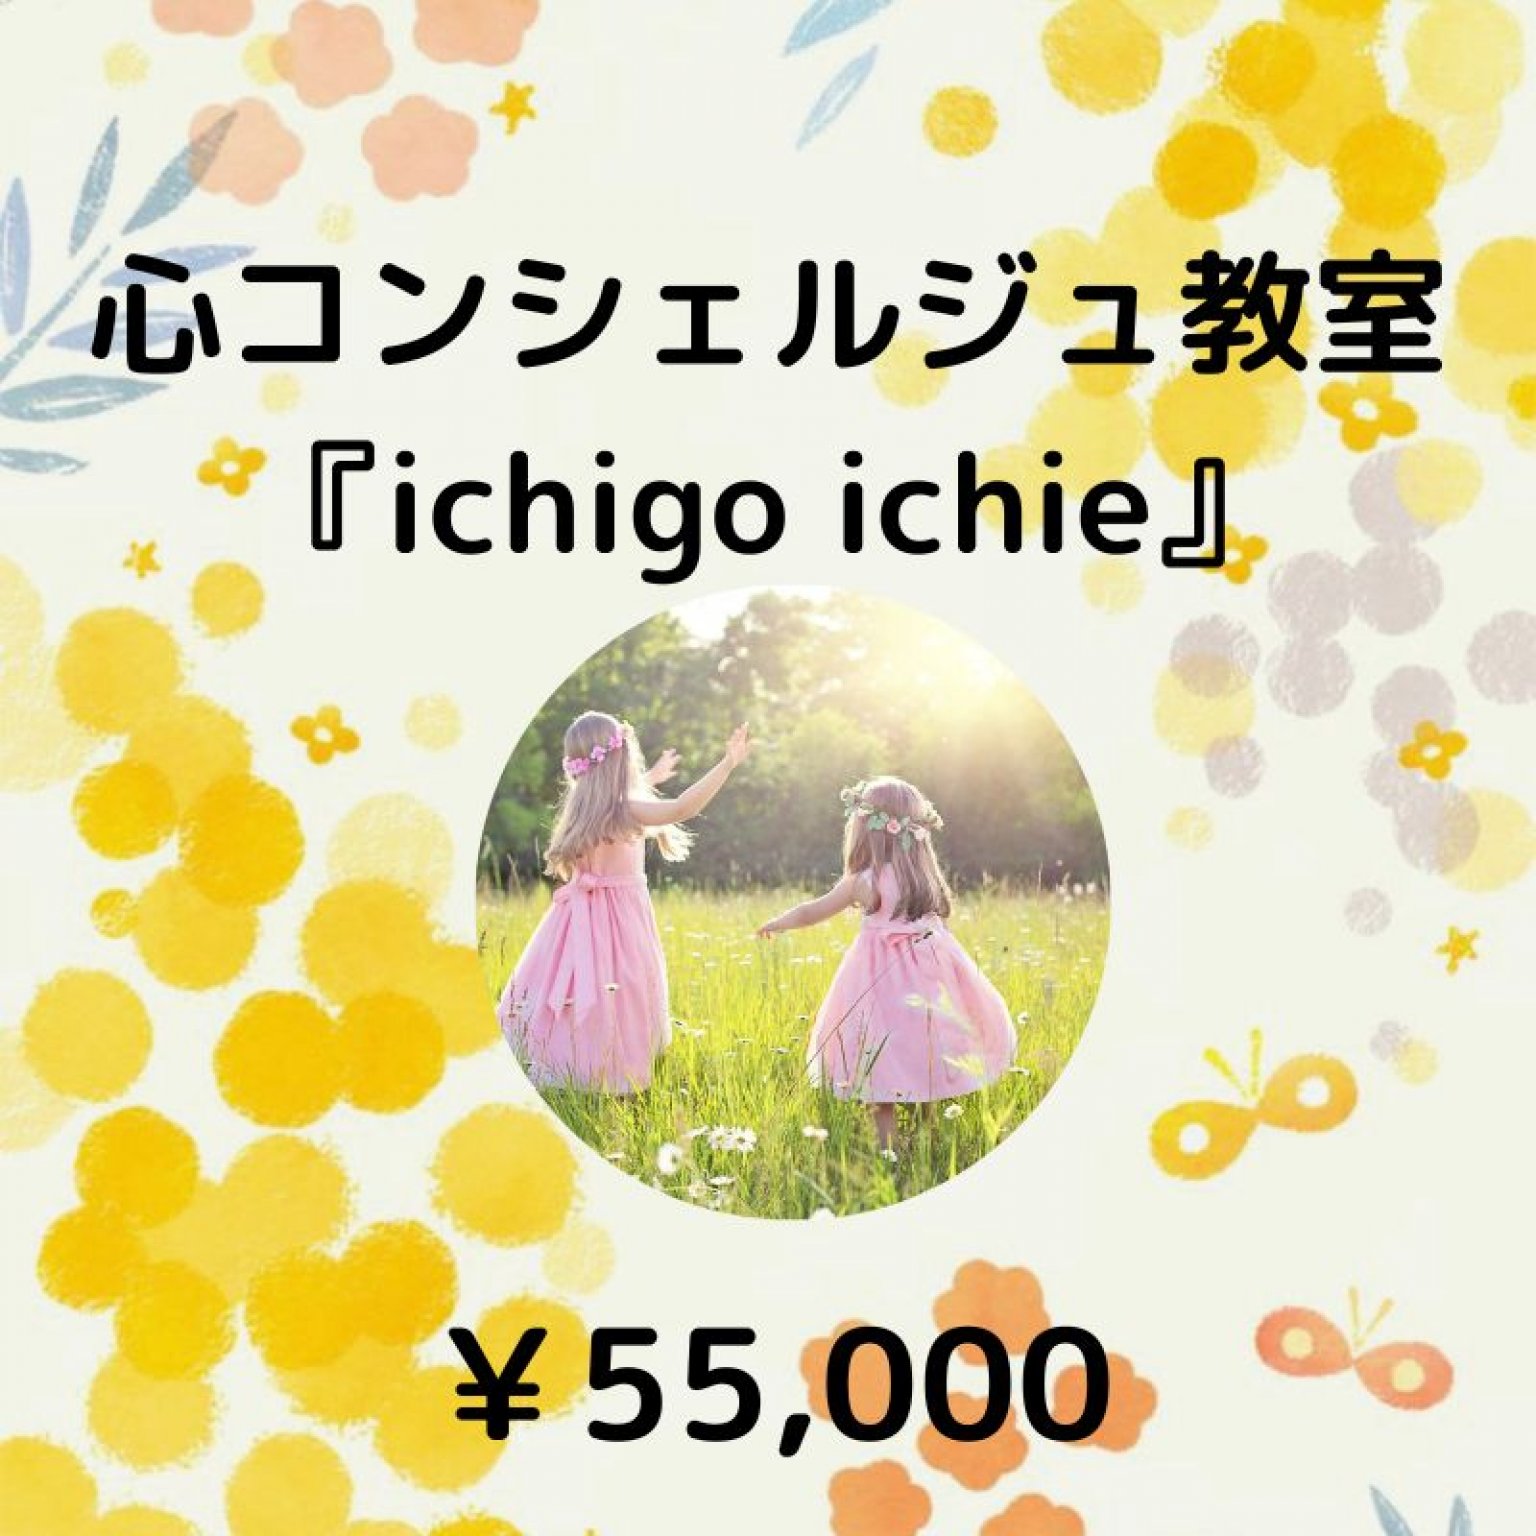 心コンシェルジュ『ichigoichie』